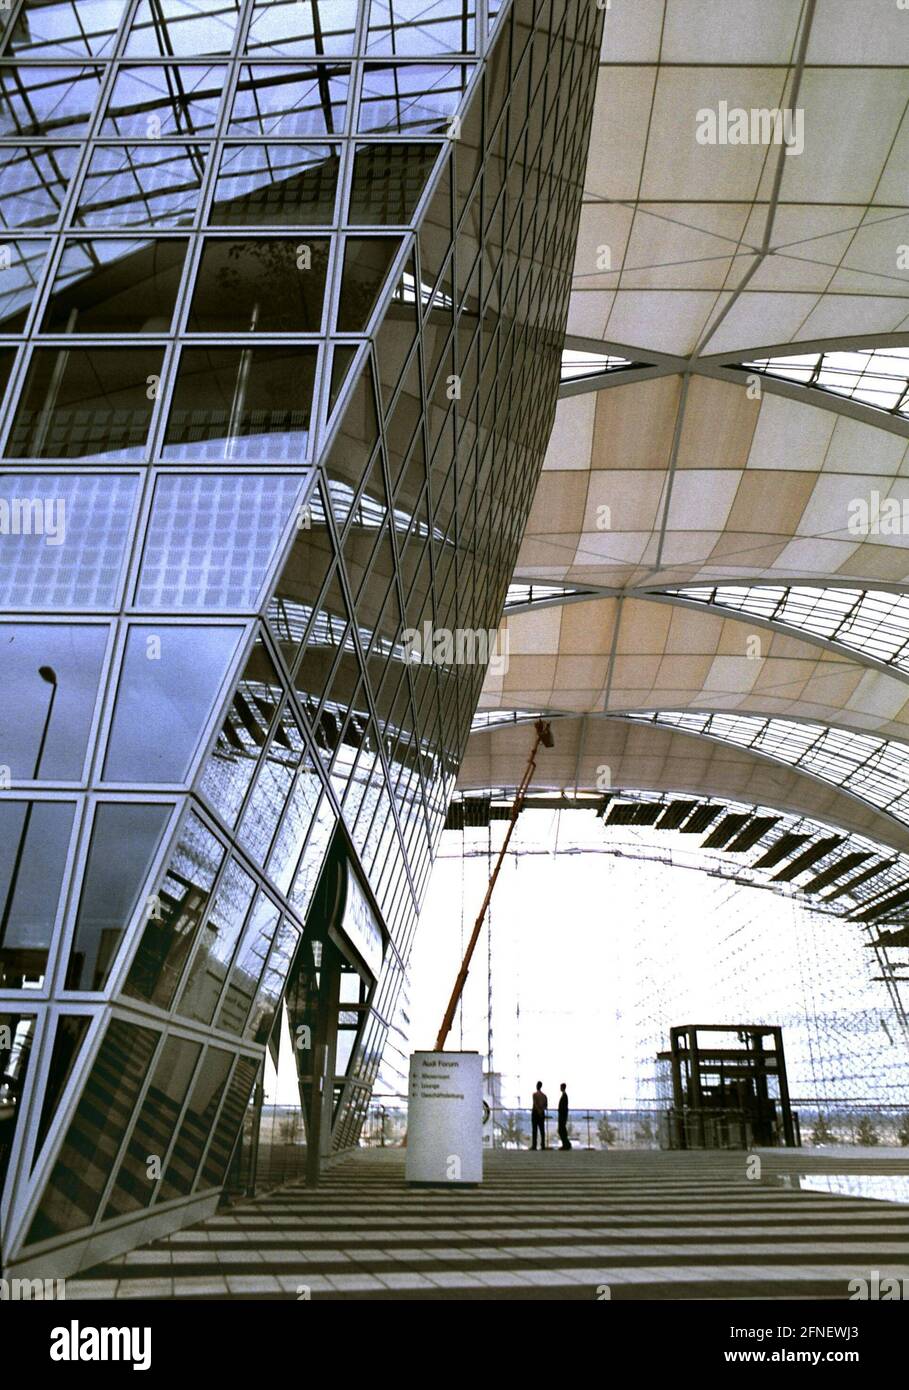 Das 'Munich Airport Center' (MAC) am Flughafen München vom Architekten  Helmut Jahn. [Automatisierte Übersetzung] Stockfotografie - Alamy